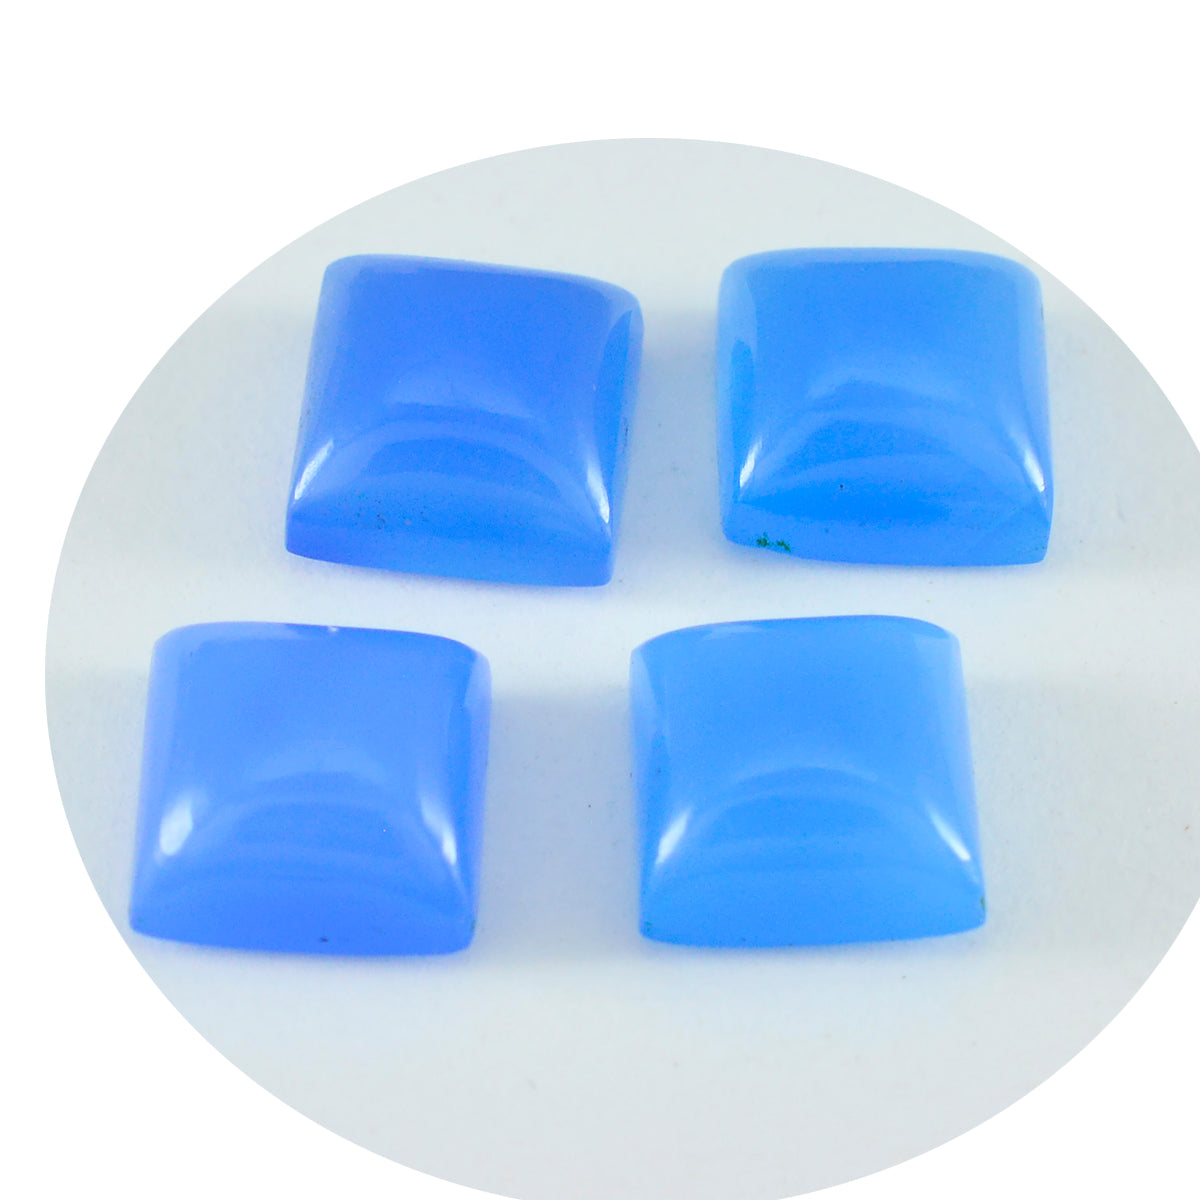 Riyogems 1 Stück blauer Chalcedon-Cabochon, 11 x 11 mm, quadratische Form, hübsche, hochwertige lose Edelsteine